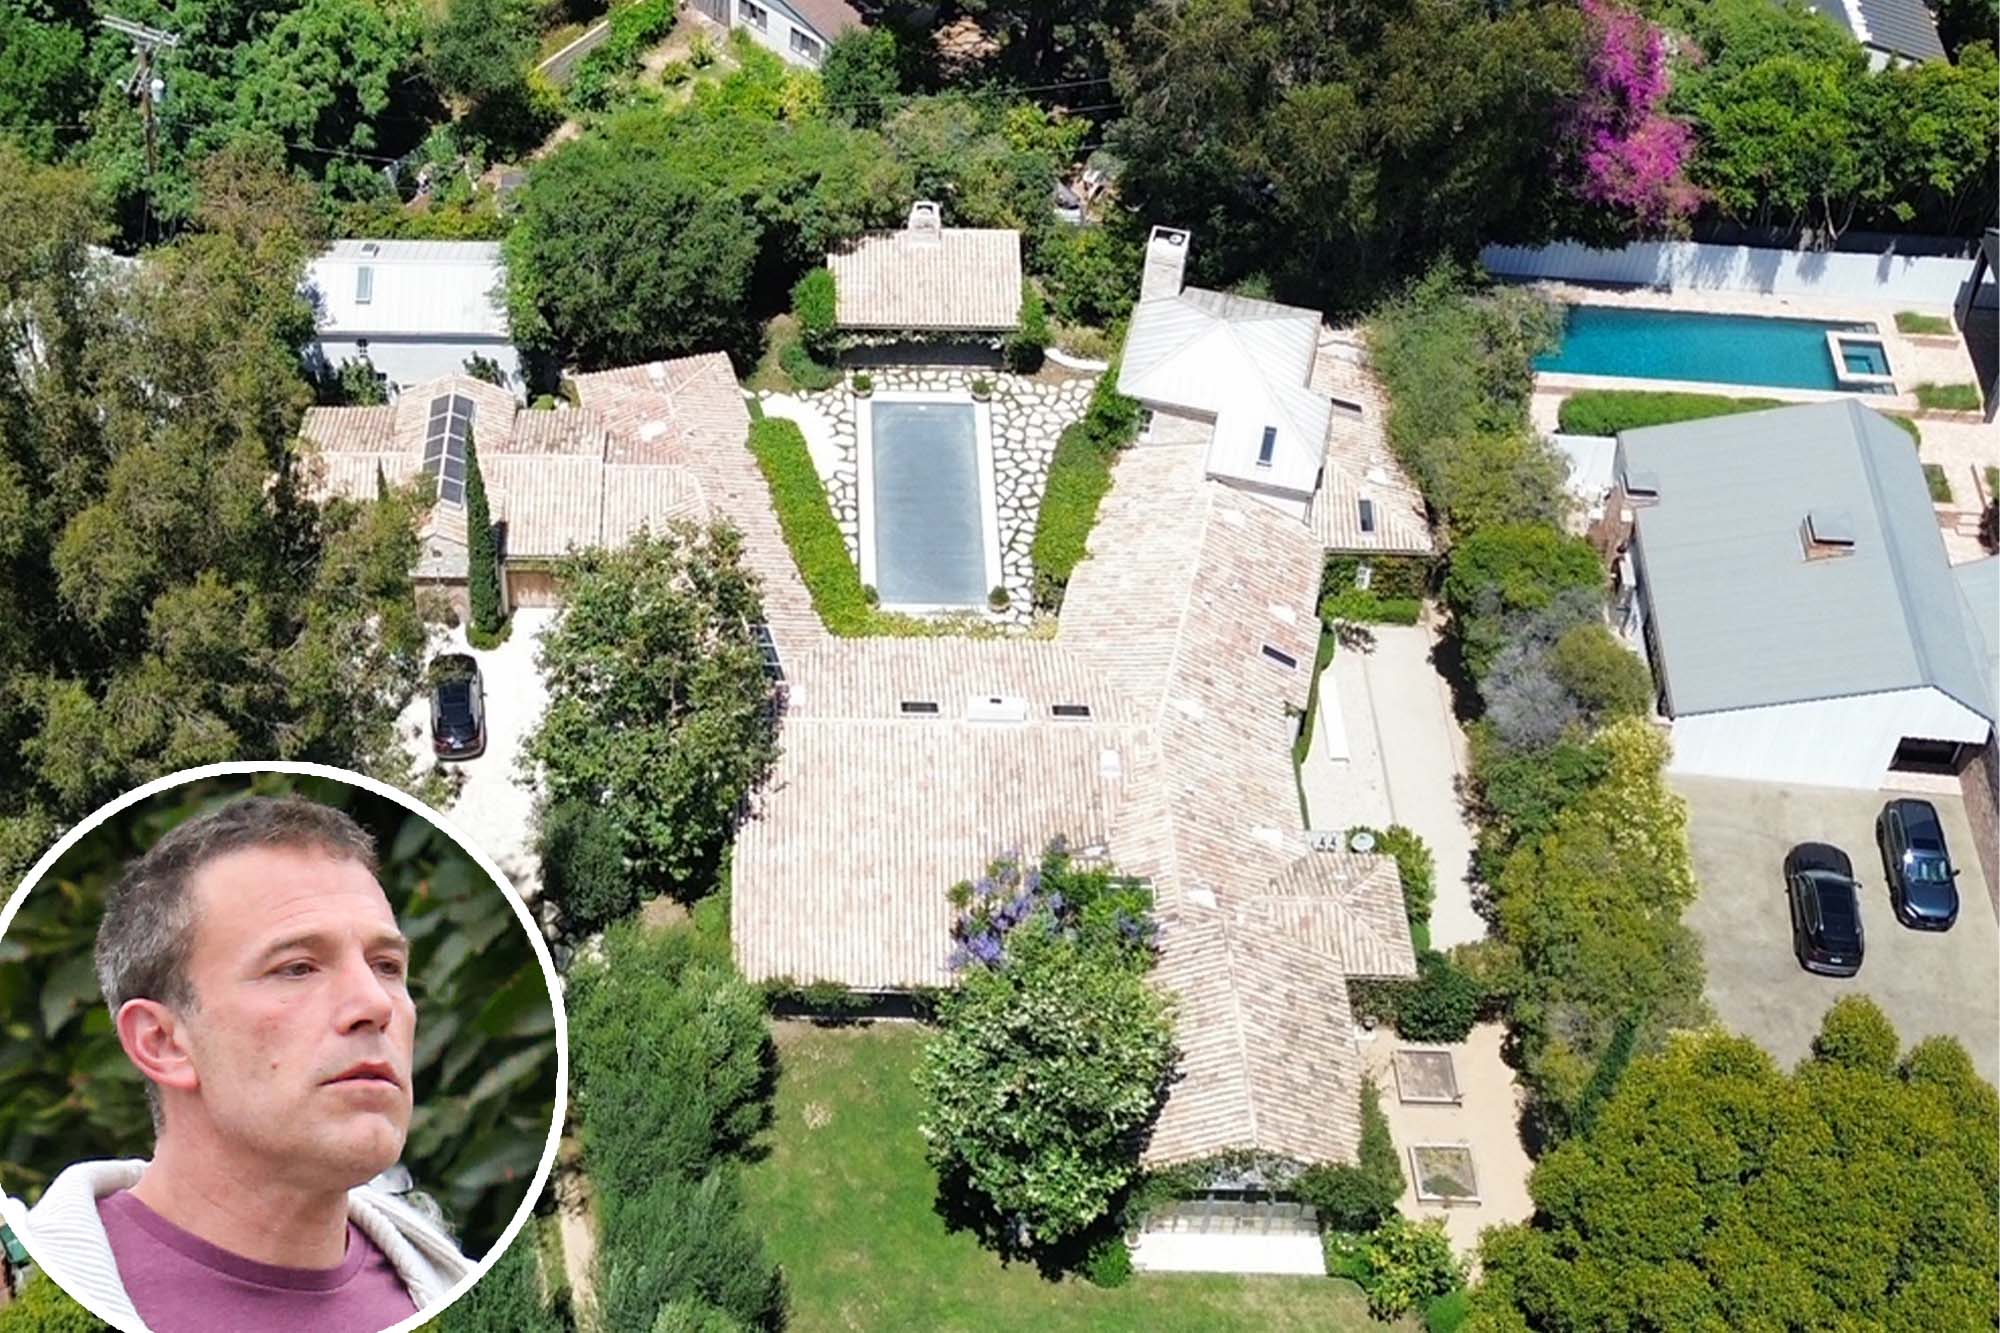 Ben Affleck buys $20.5M LA home amid J.Lo divorce rumors